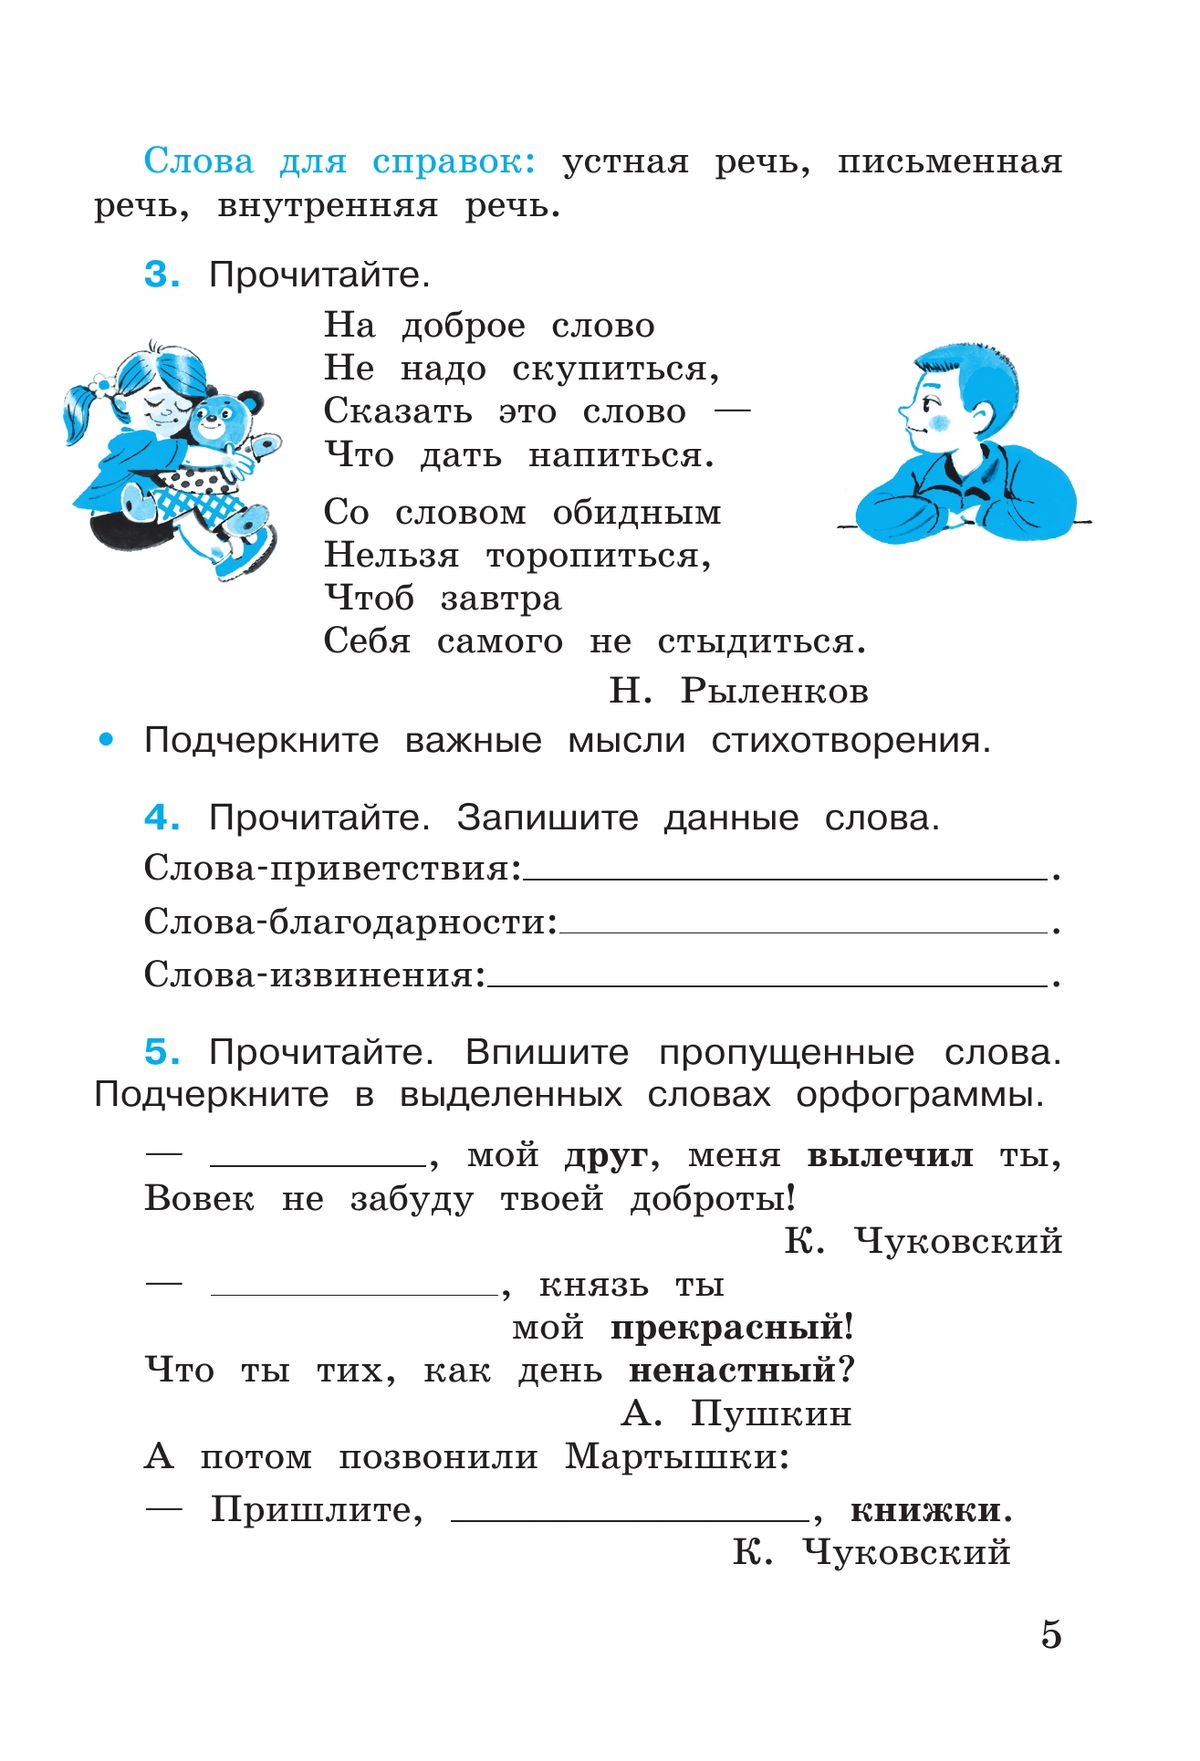 Русский язык. Рабочая тетрадь. 4 класс. В 2 частях. Часть 1 2